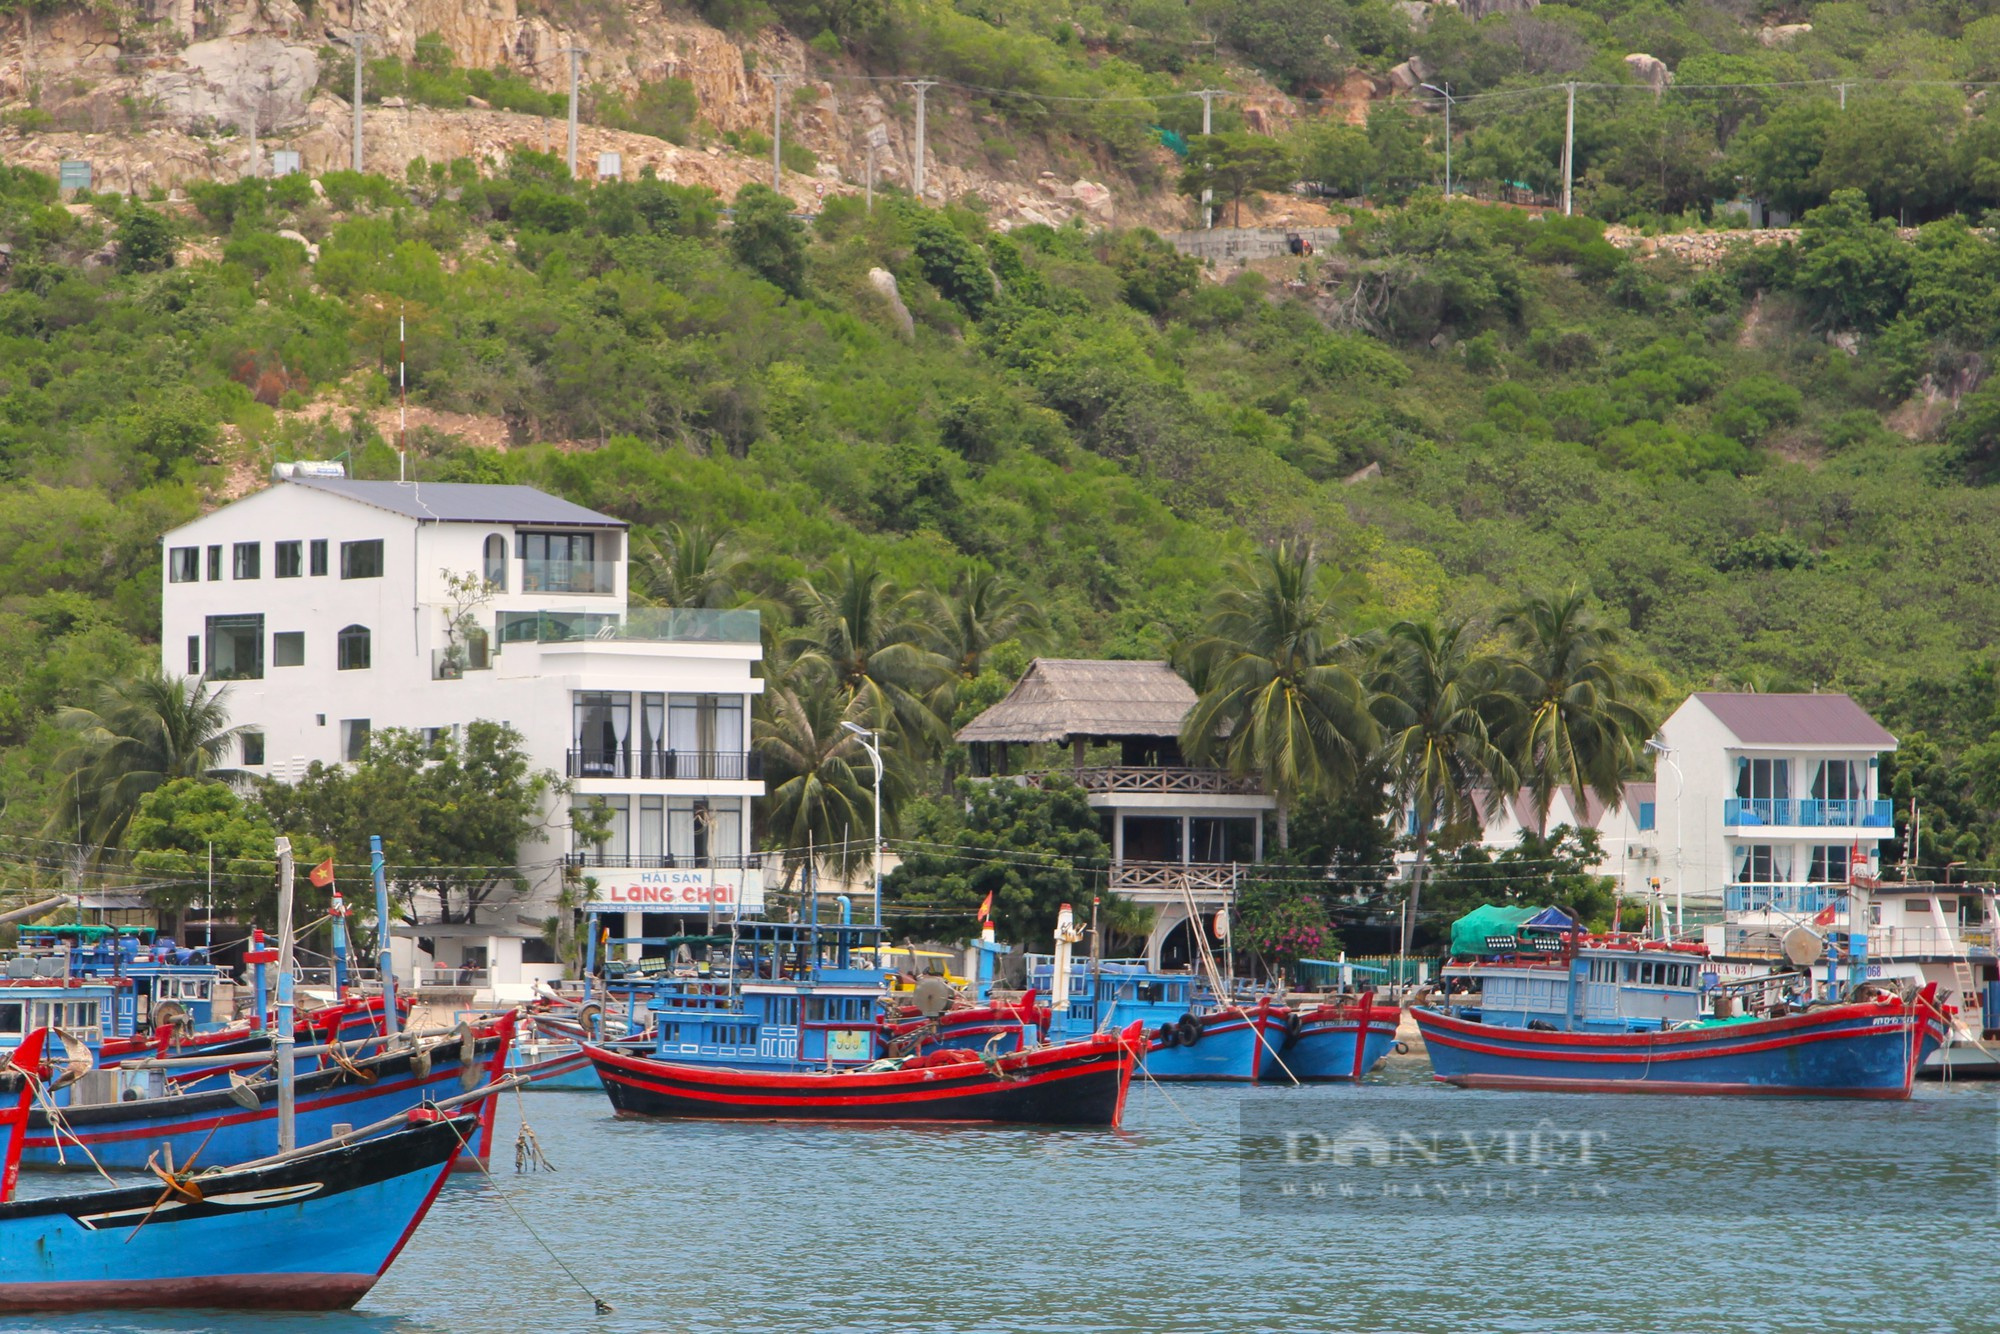 Chủ tịch UBND tỉnh Ninh Thuận kiểm tra chấn chỉnh hoạt động du lịch ở vịnh Vĩnh Hy sau phản ánh của Dân Việt - Ảnh 5.